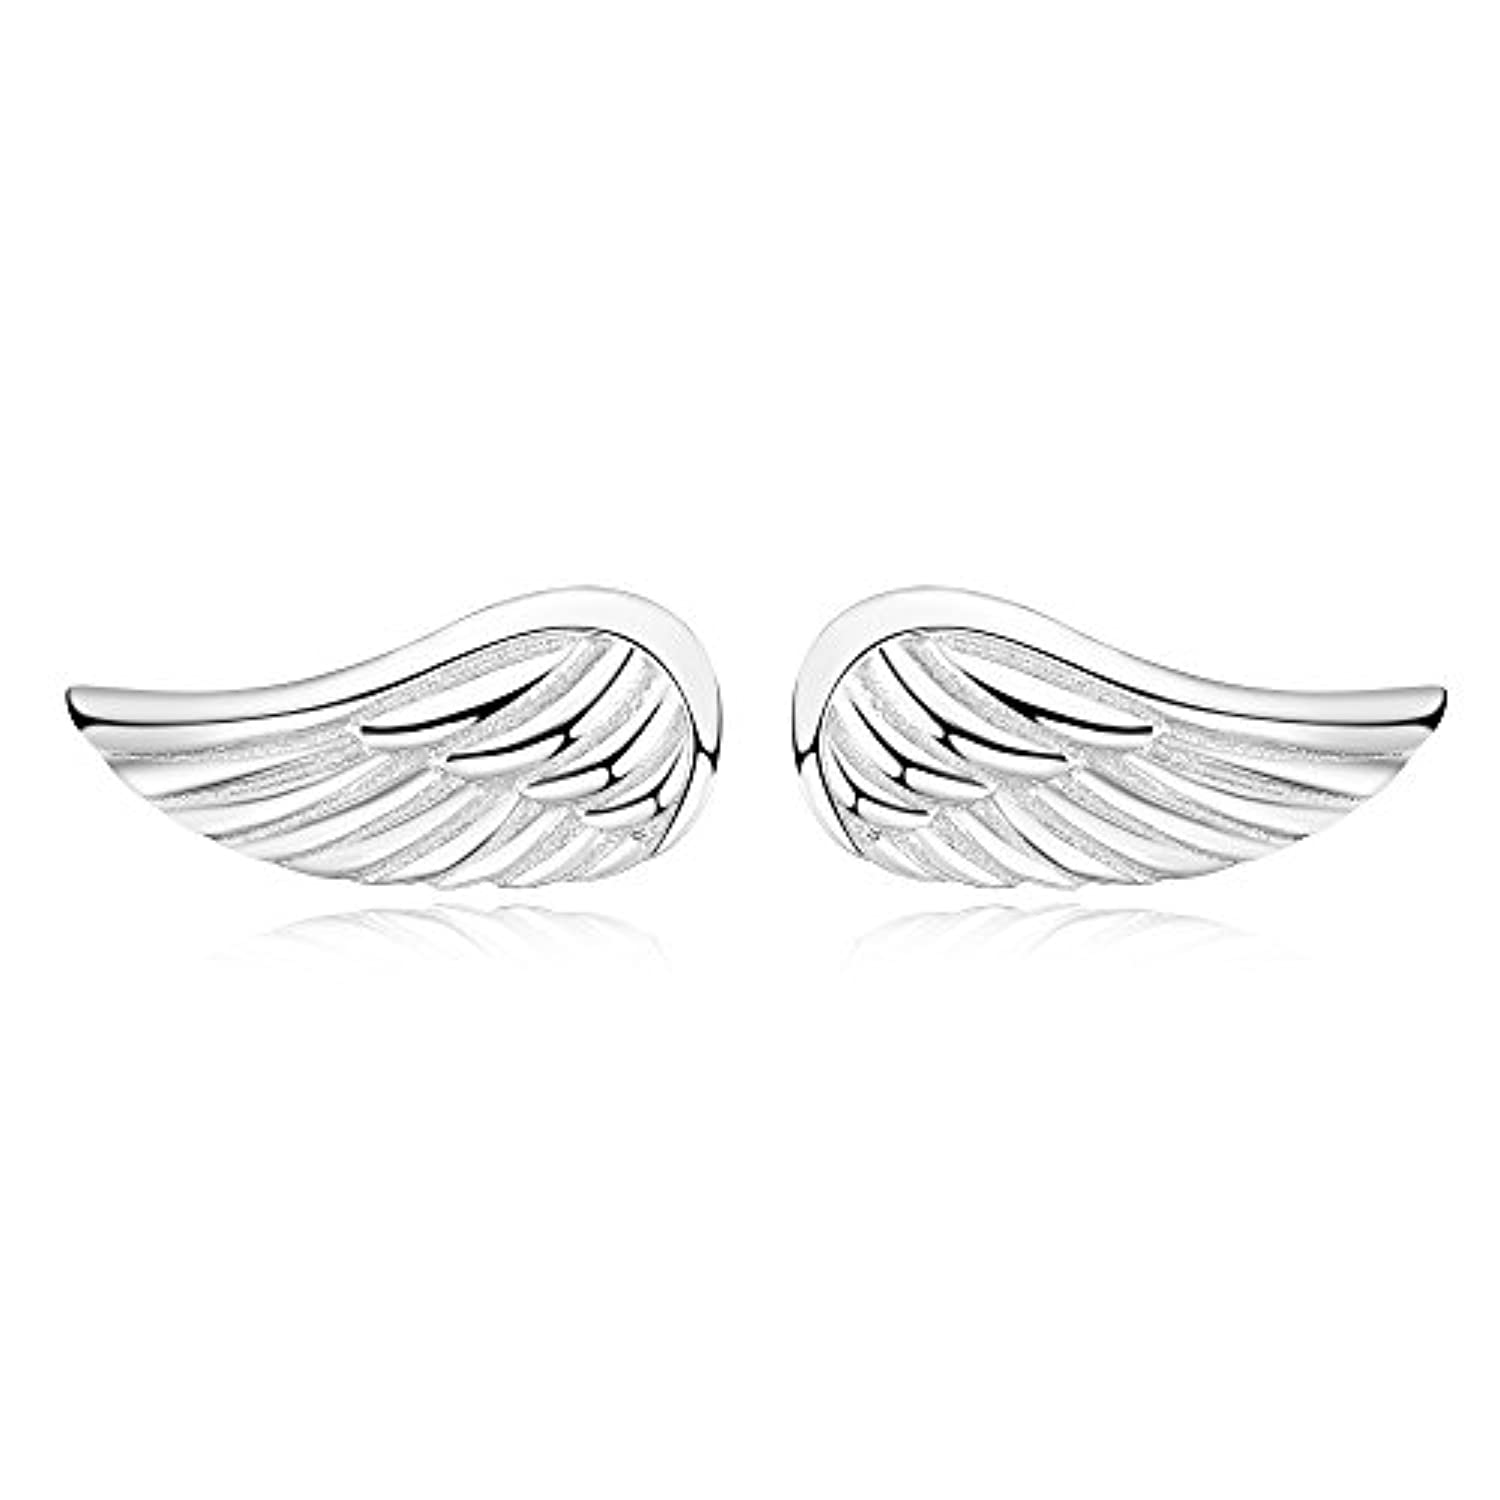 Angel Wings stud Earrings